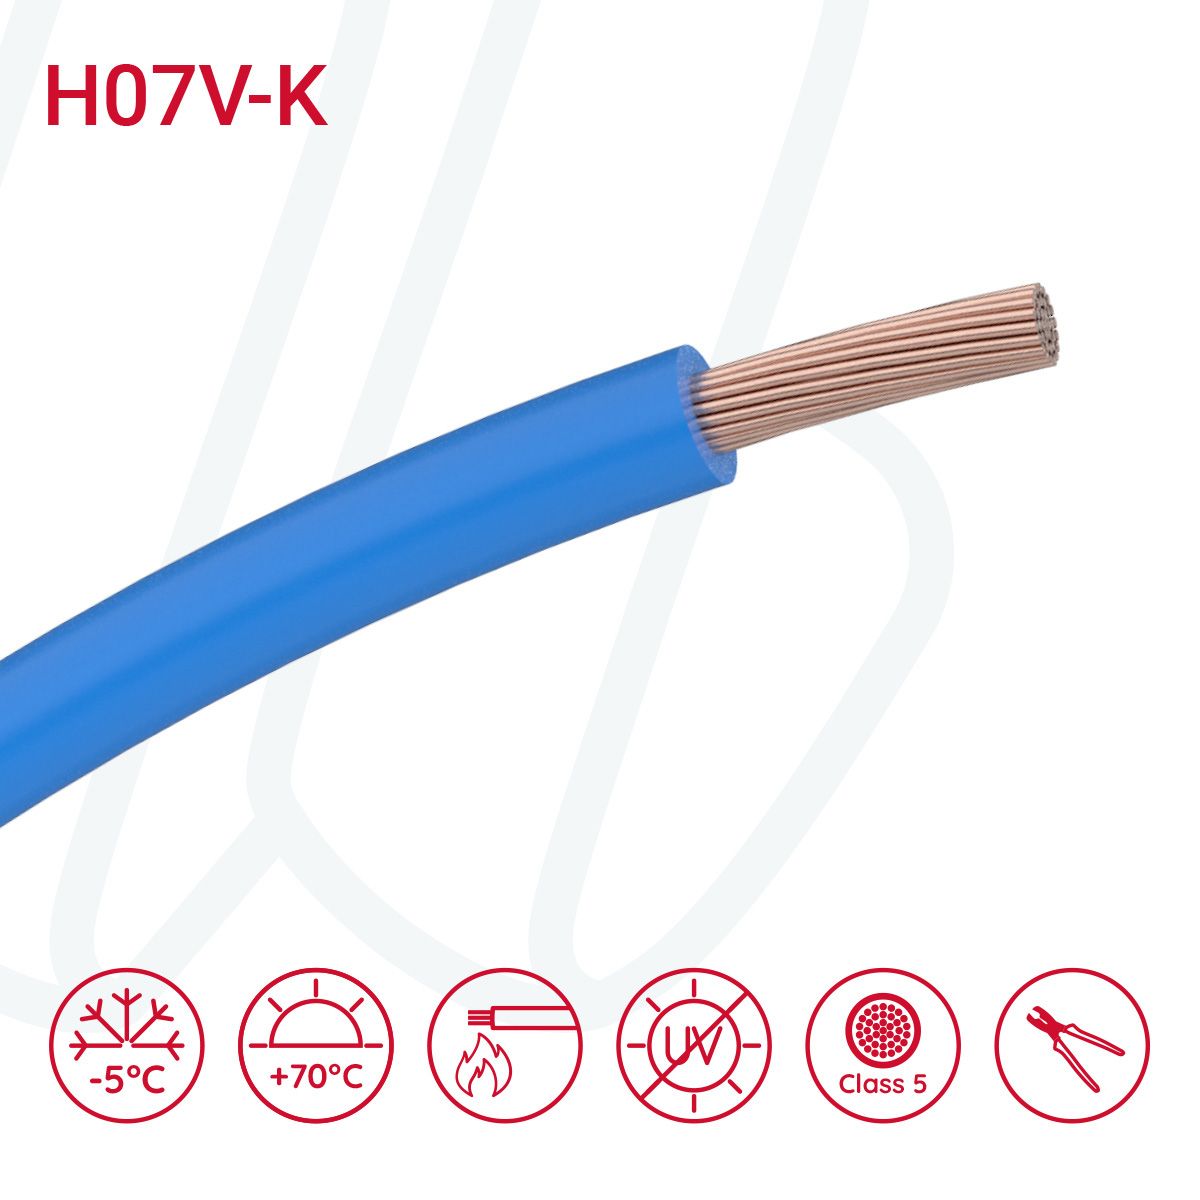 Провід монтажний гнучкий H07V-K 10 мм² блакитний, 01, 10